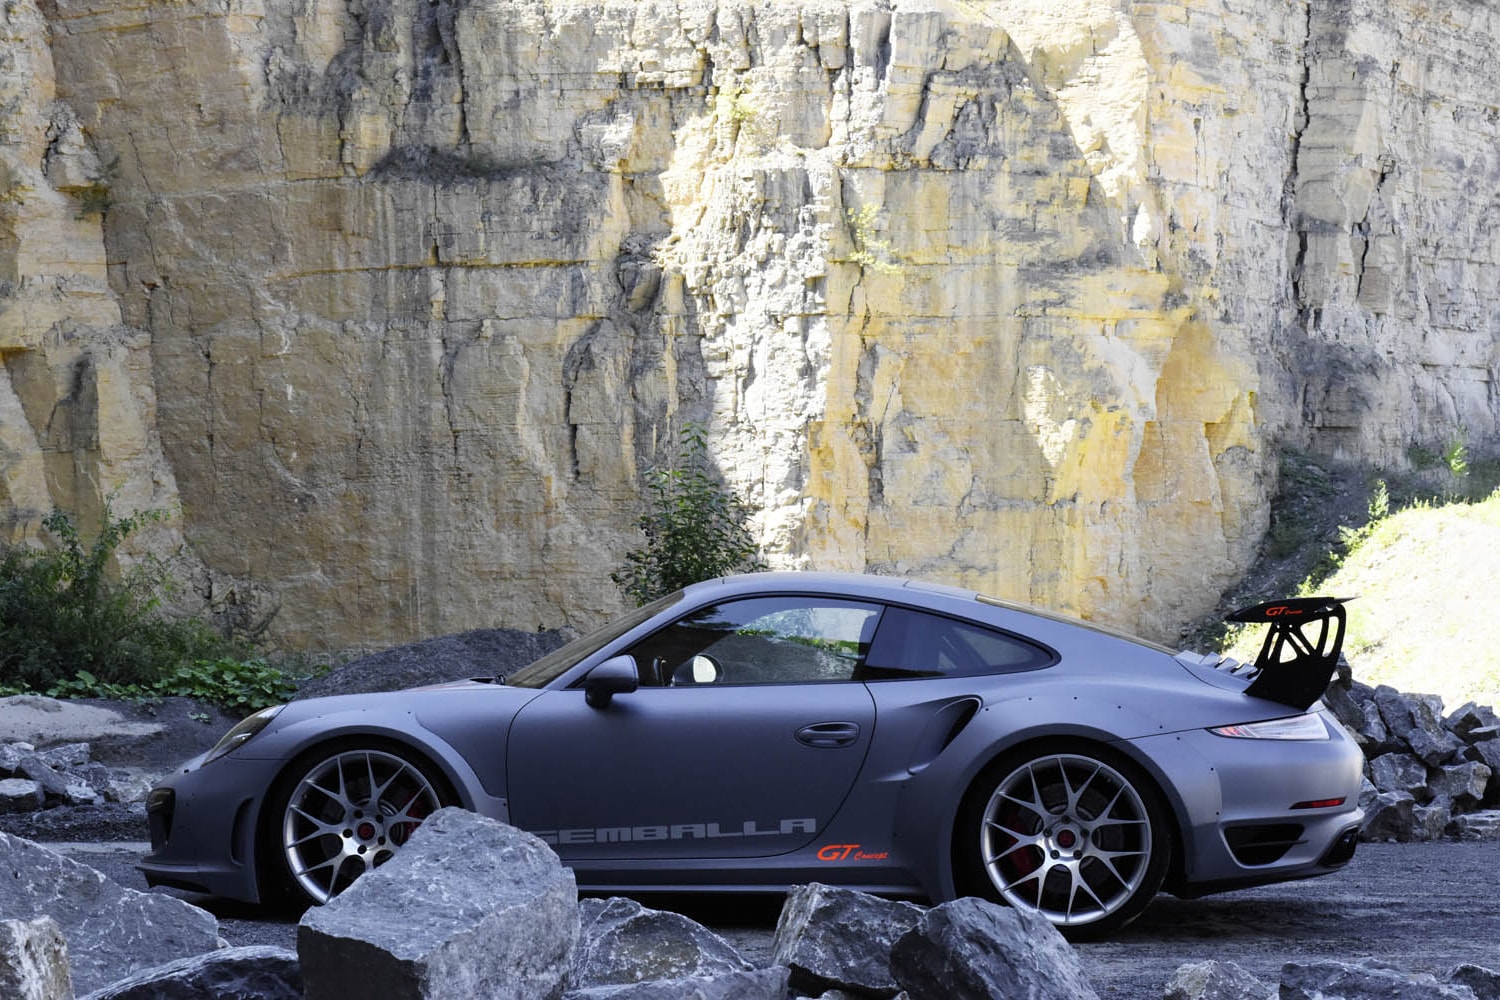 Gemballa Porsche 911 Turbo GT Concept SEMA GTR 8XX Evo R BiTurbo 0 to 60 2.4 Seconds